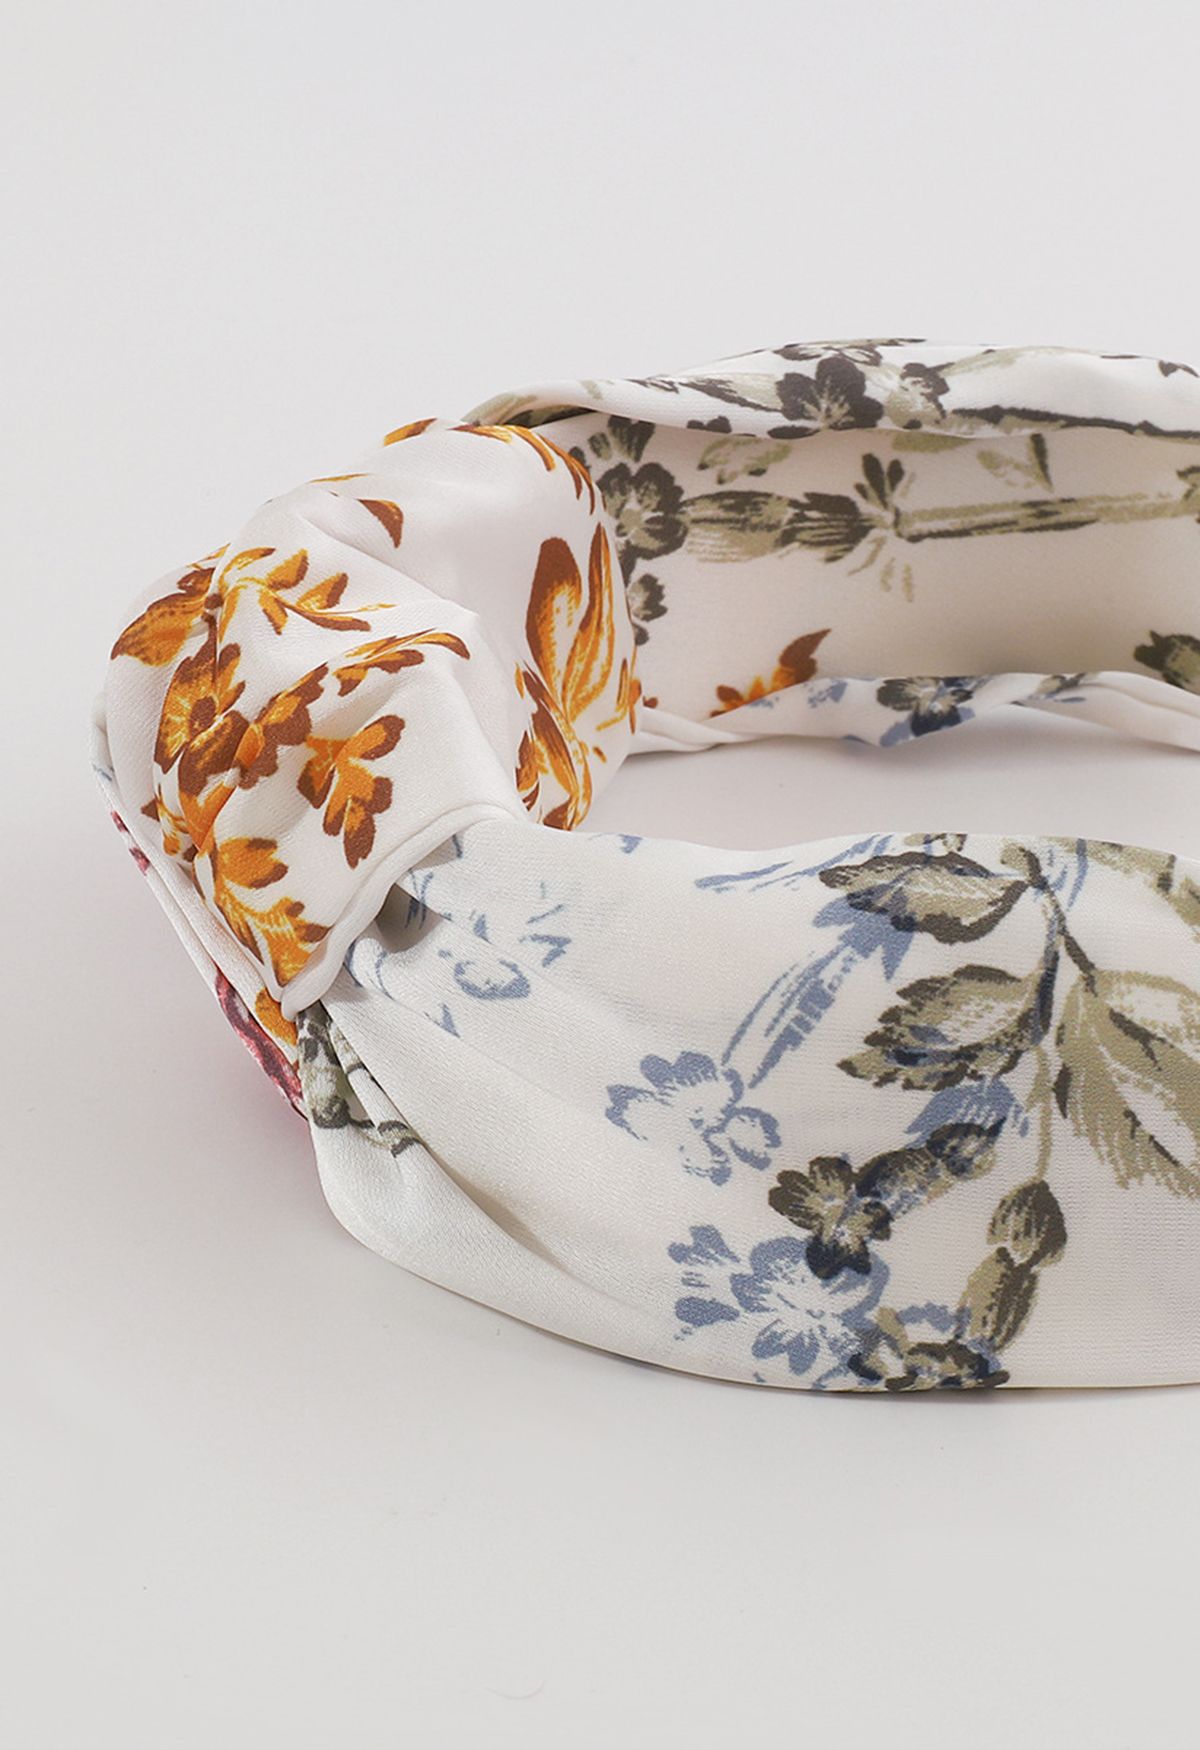 Geknotetes Stirnband mit Blumenmuster in Weiß